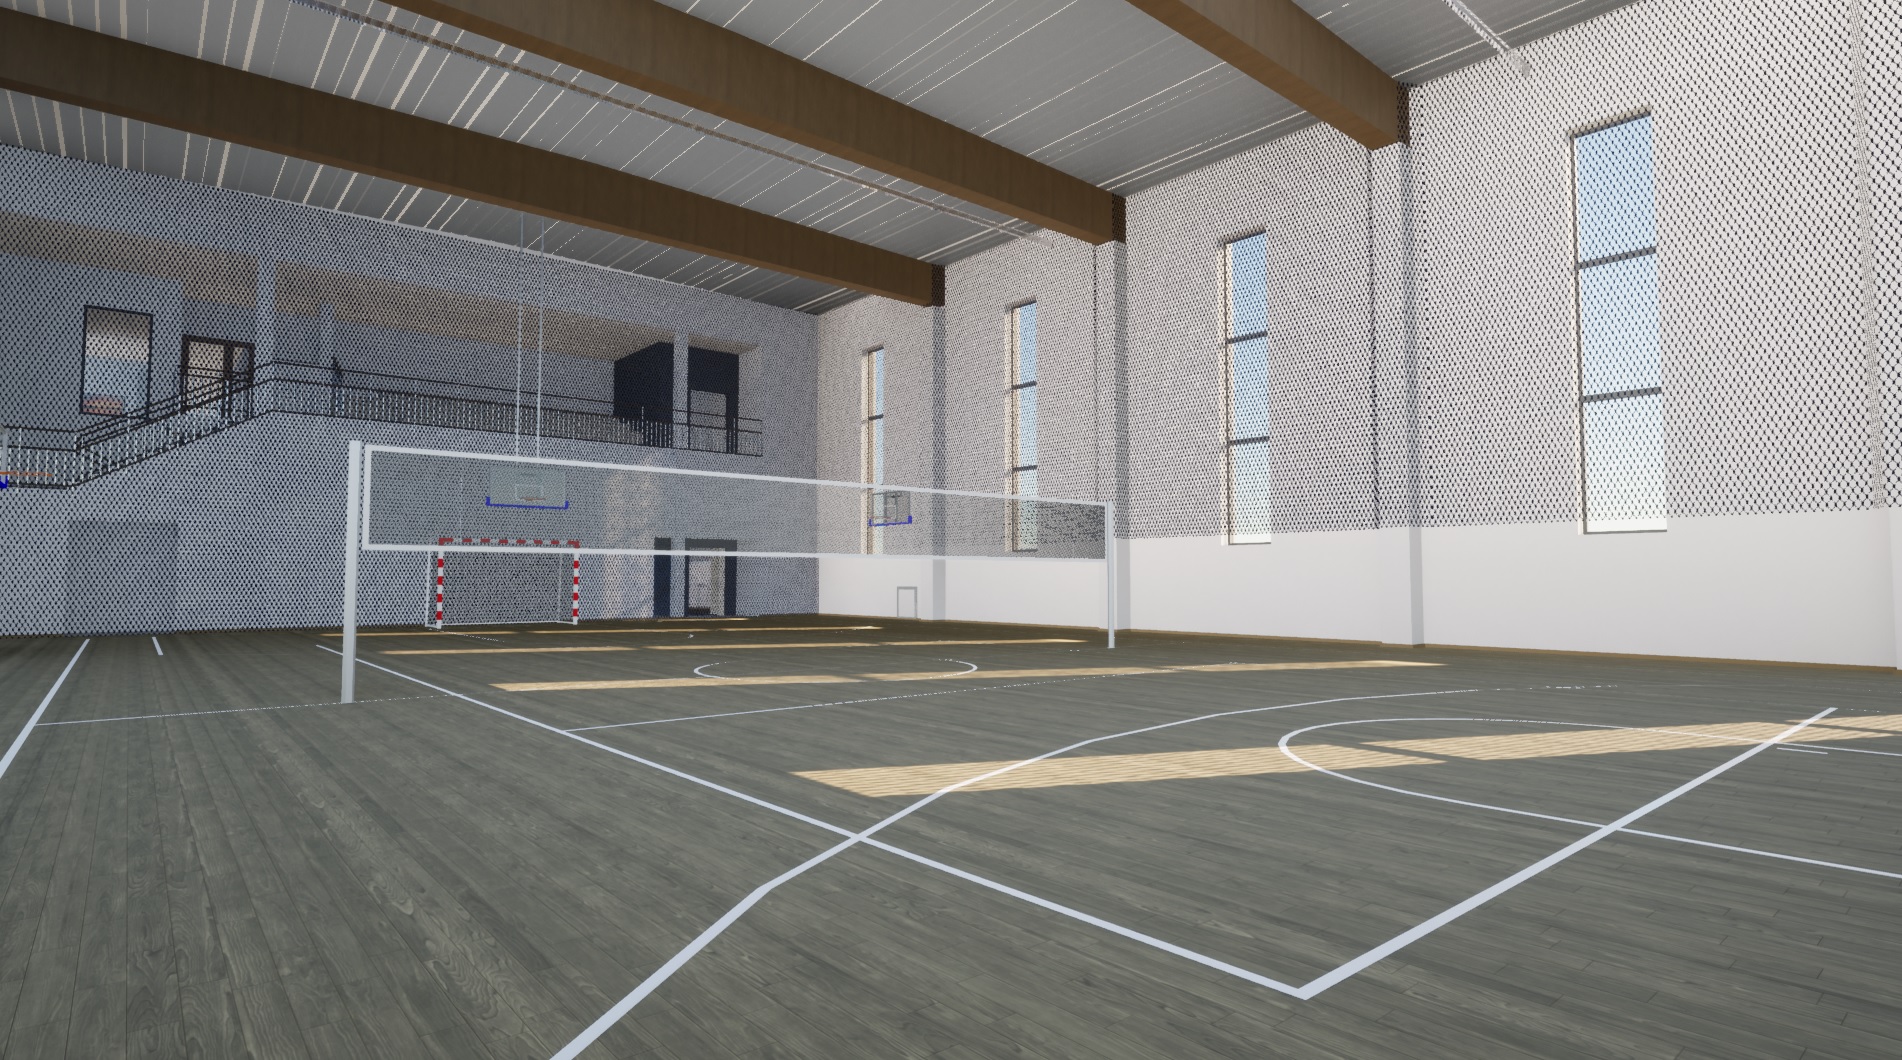 Wizualizacja sali gimnastycznej. Na głównym boisku będzie można rozgrywać mecze koszykówki i siatkówki. W zależności od potrzeb parkiet może zostać podzielony również w inny sposób - na 3 treningowe boiska do siatkówki lub 2 treningowe boiska do koszykówki.